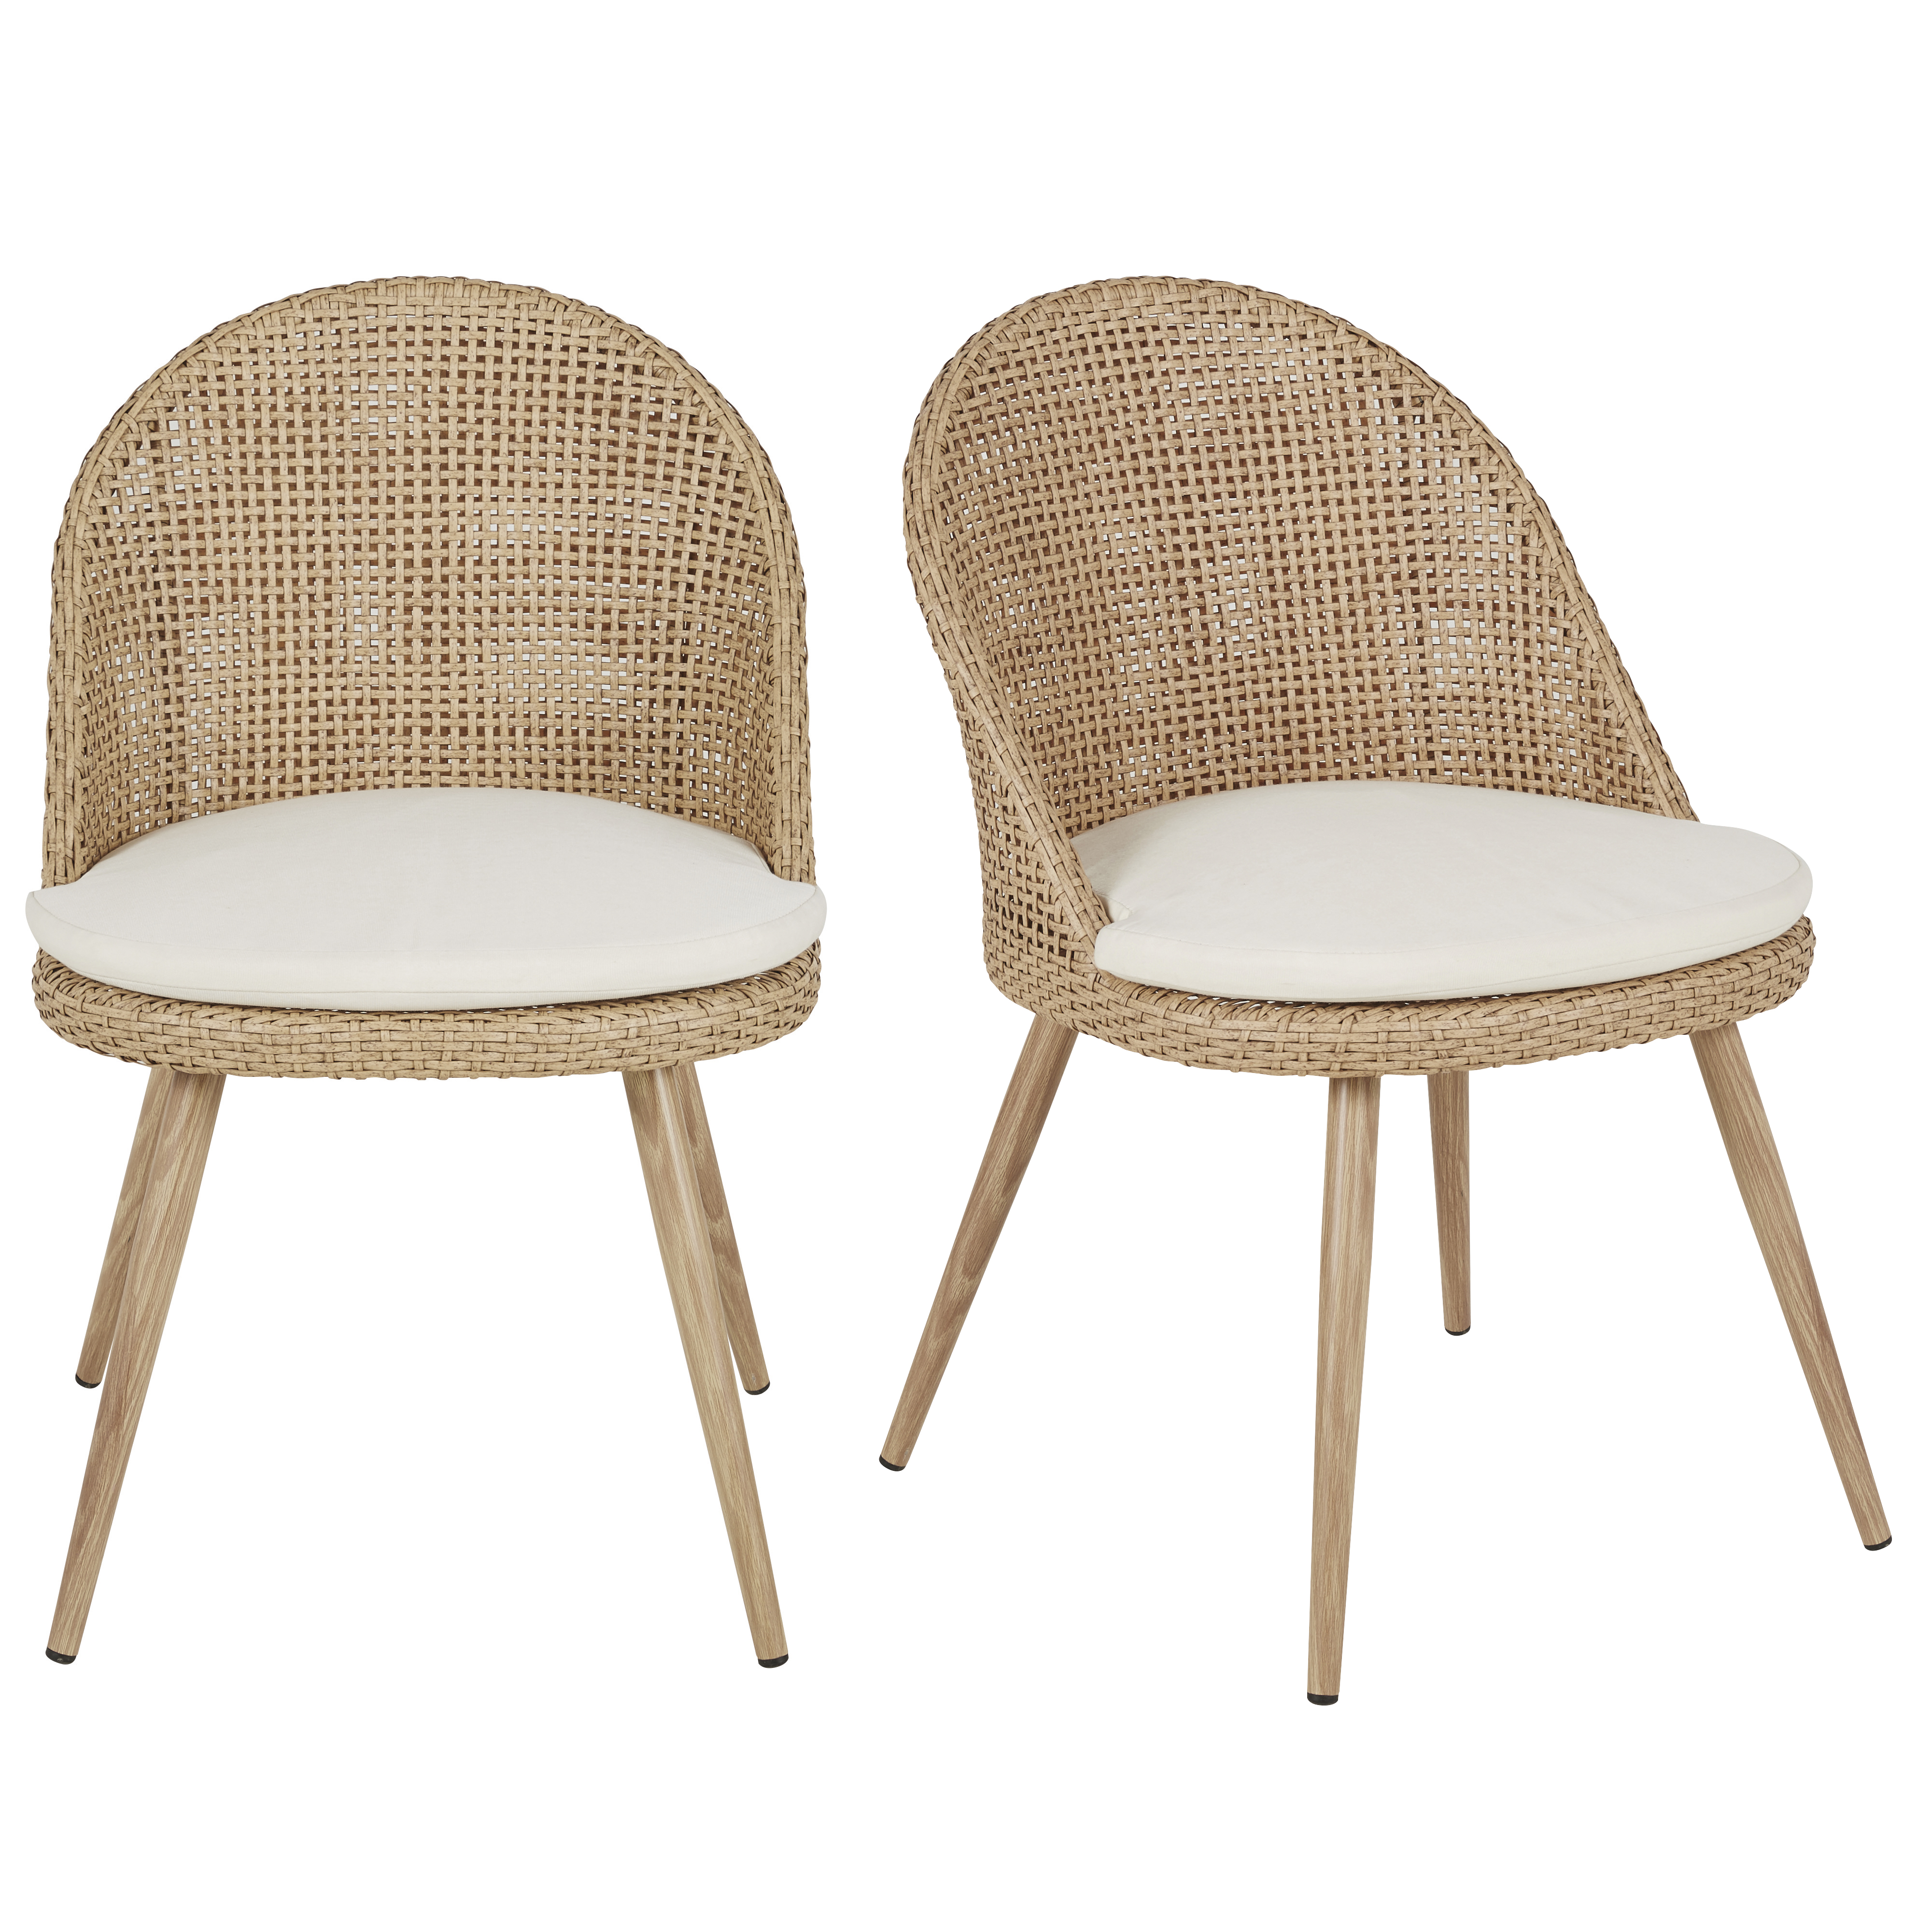 chaises de jardin cannage en résine recyclée imitation rotin et coussin écru en polyester recyclé (x2)